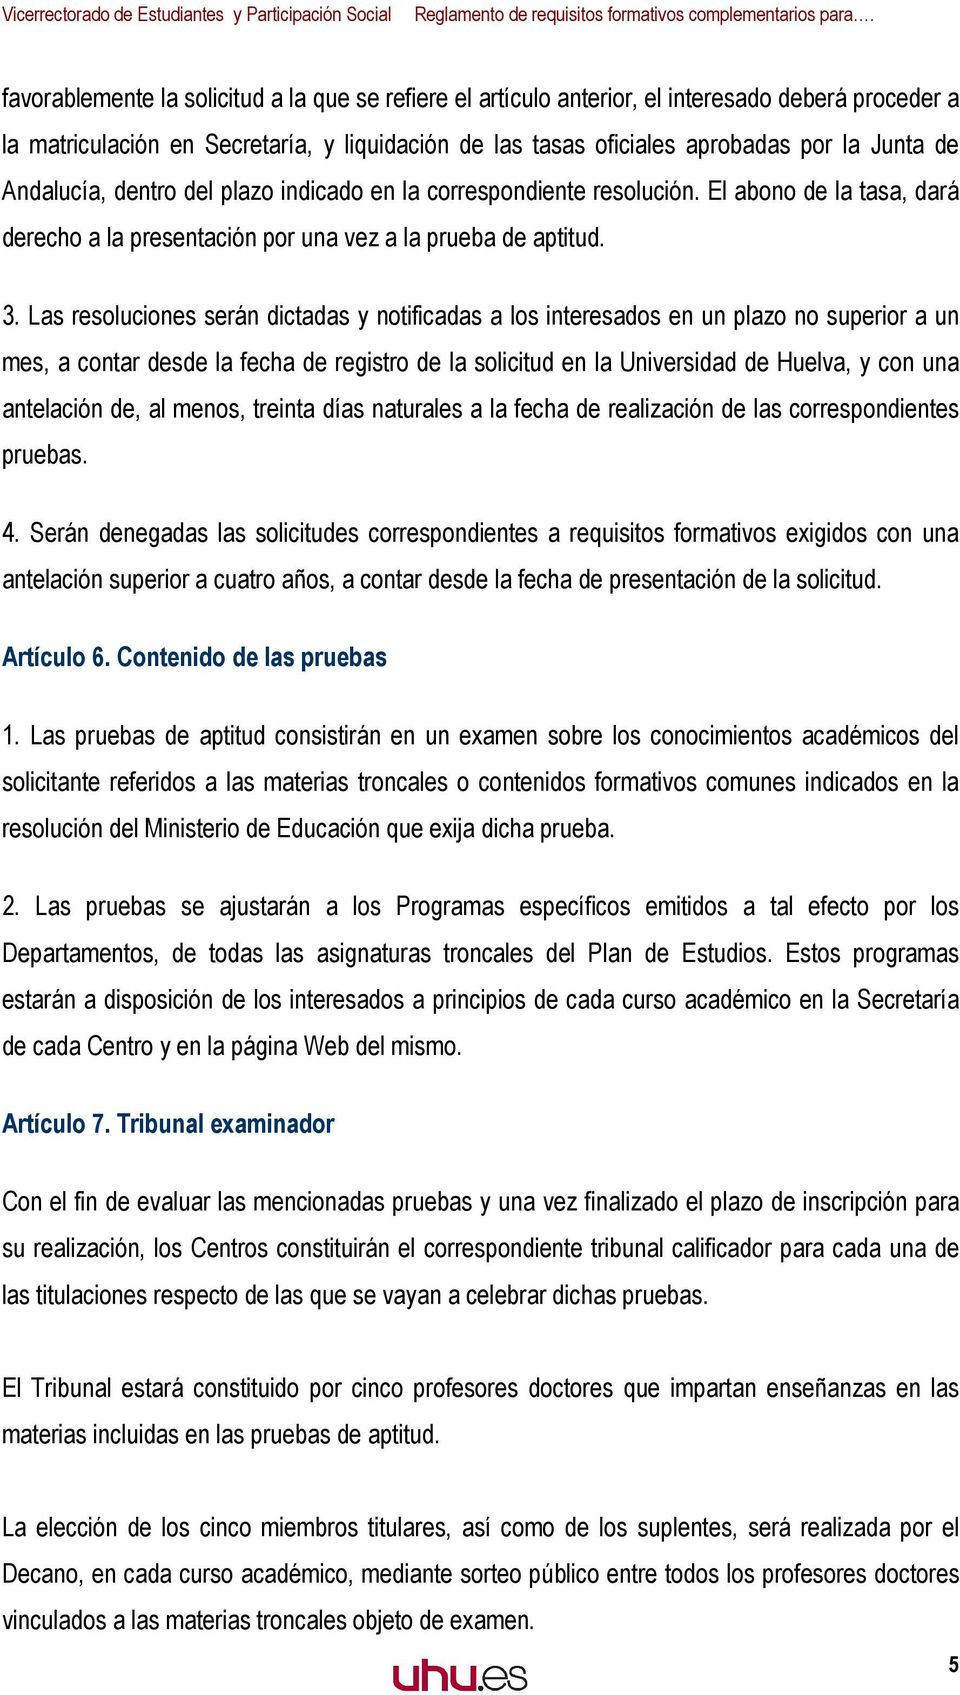 Las resoluciones serán dictadas y notificadas a los interesados en un plazo no superior a un mes, a contar desde la fecha de registro de la solicitud en la Universidad de Huelva, y con una antelación